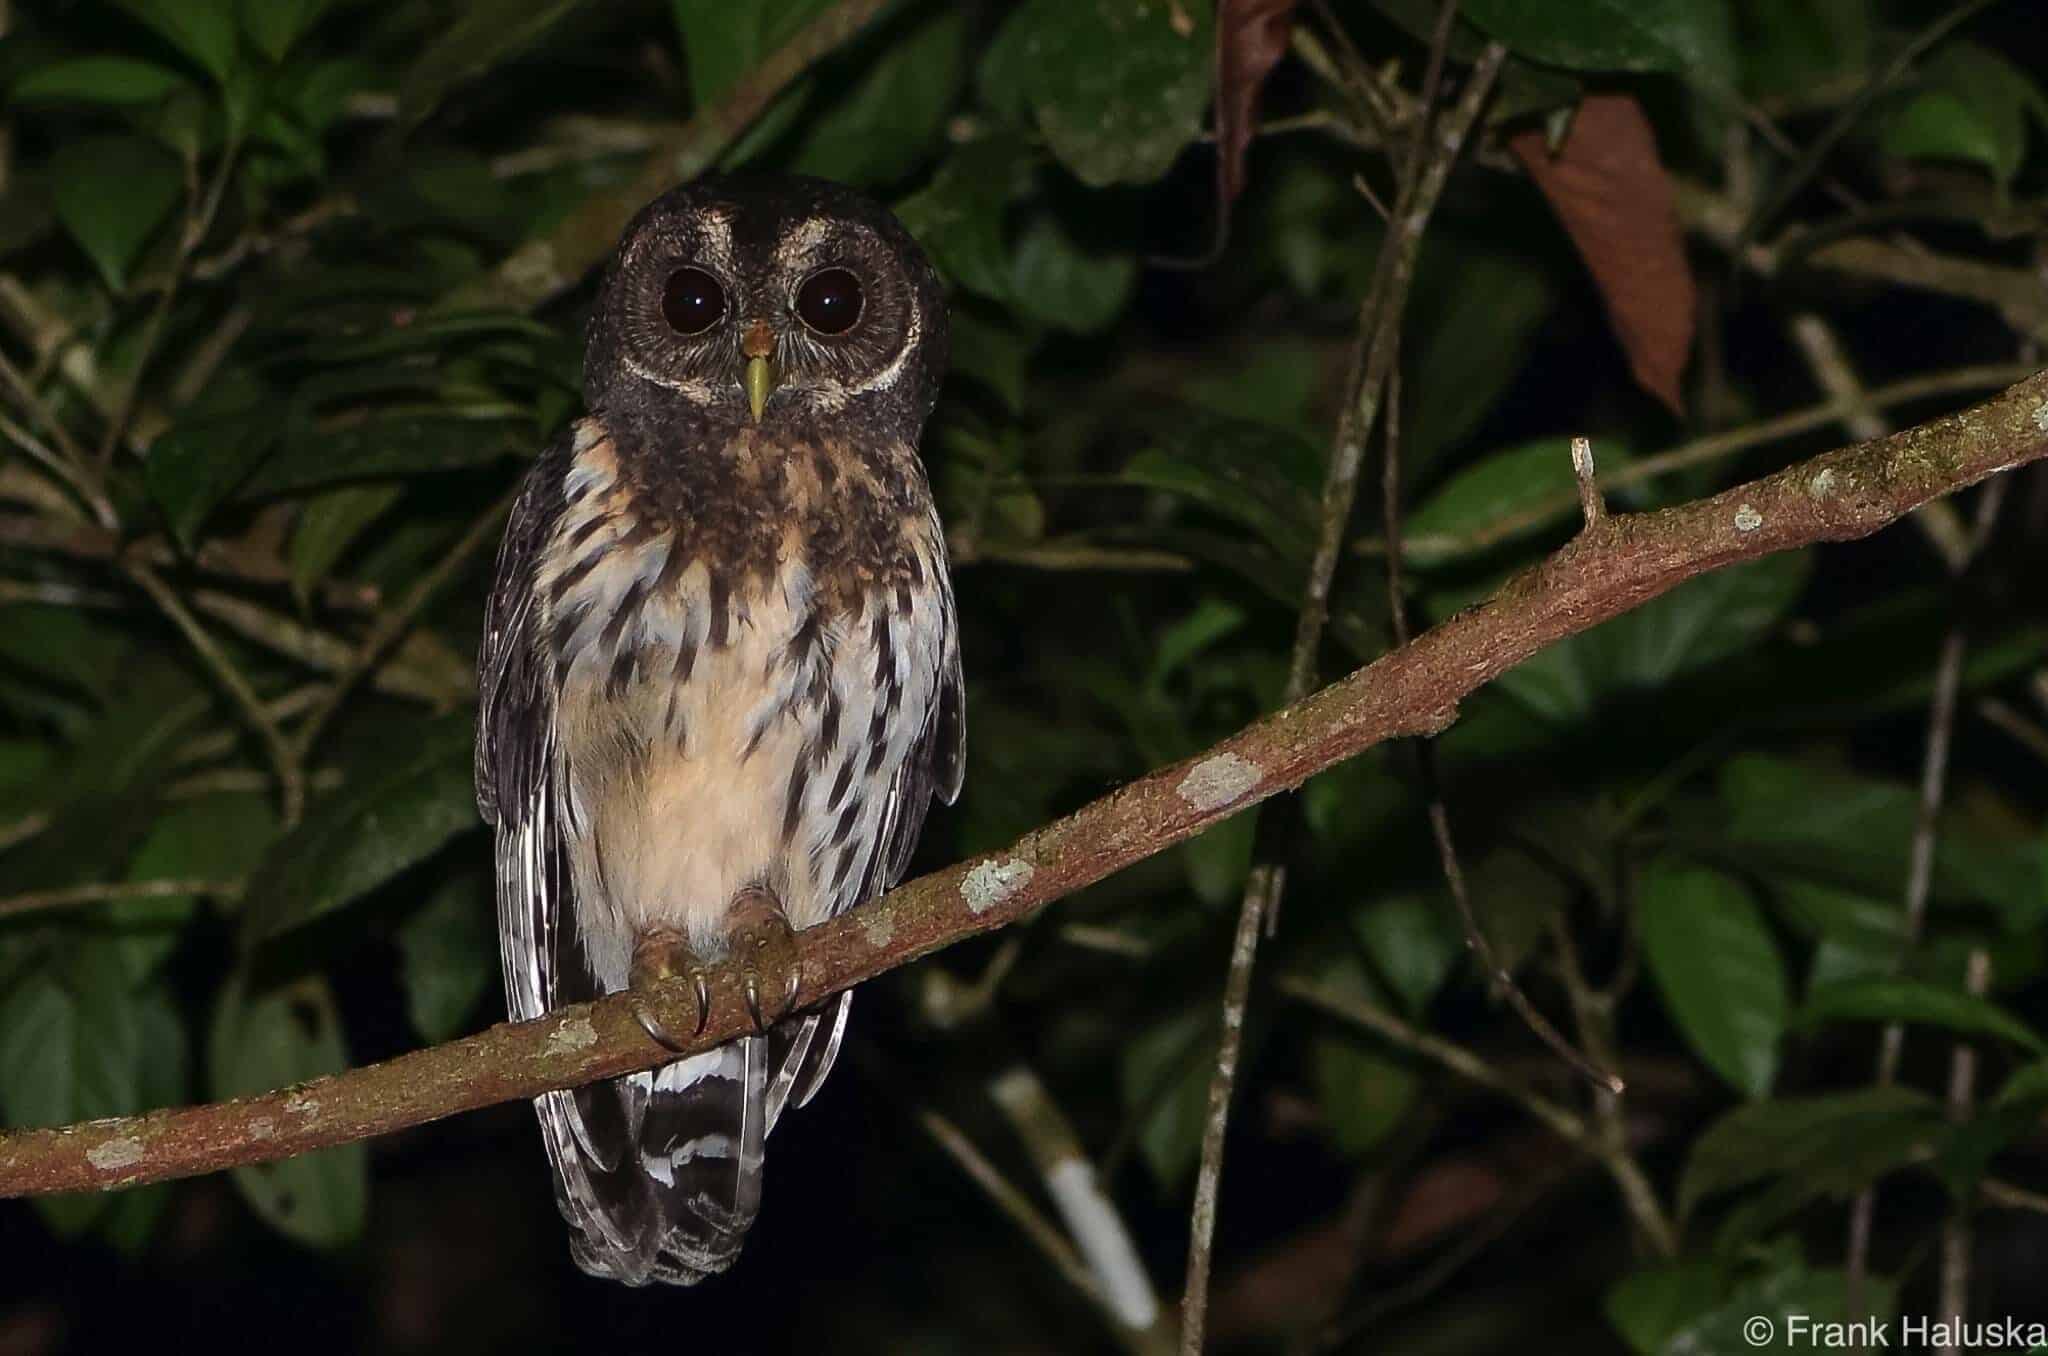 Owl seen on night hike